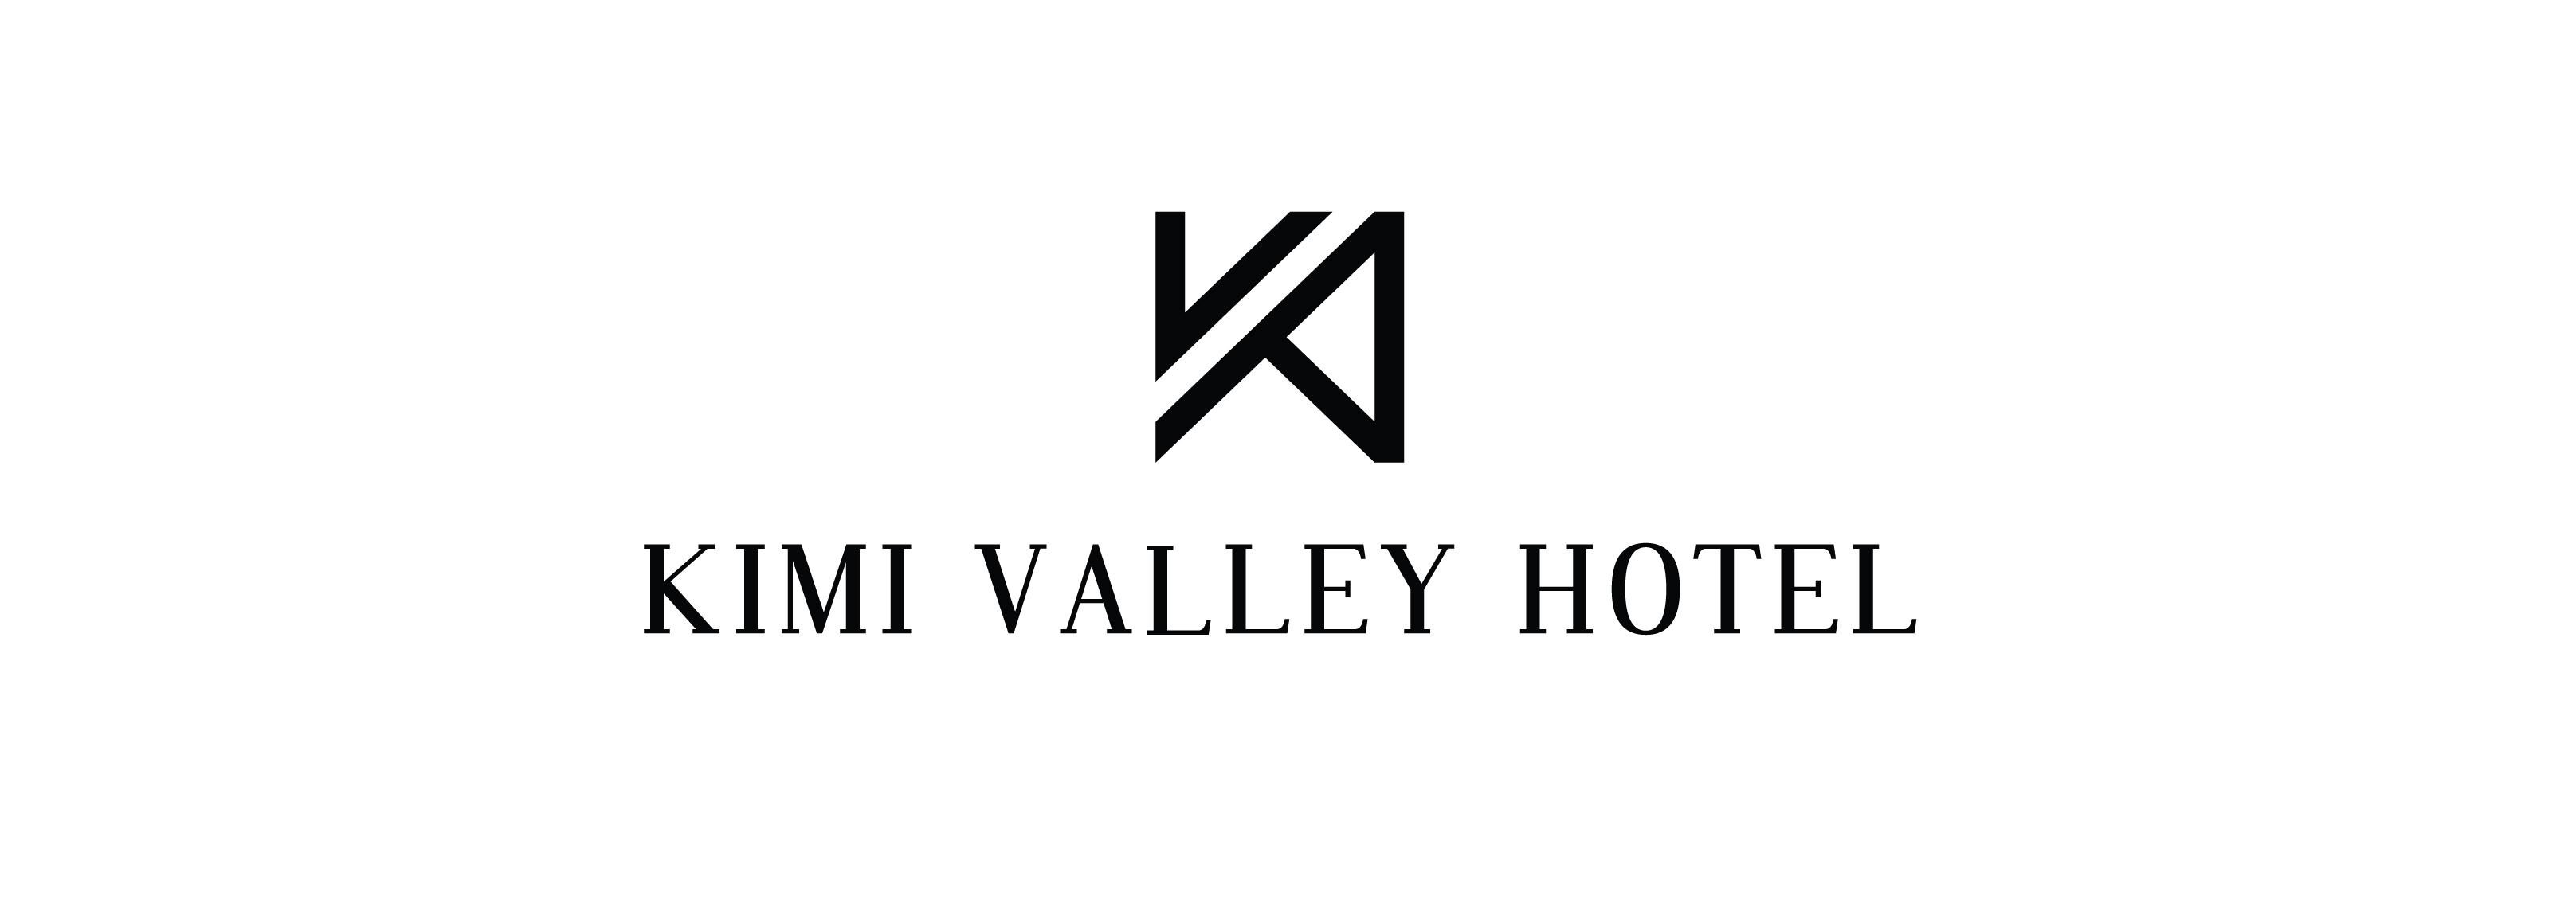 Kimi Valley Hotel